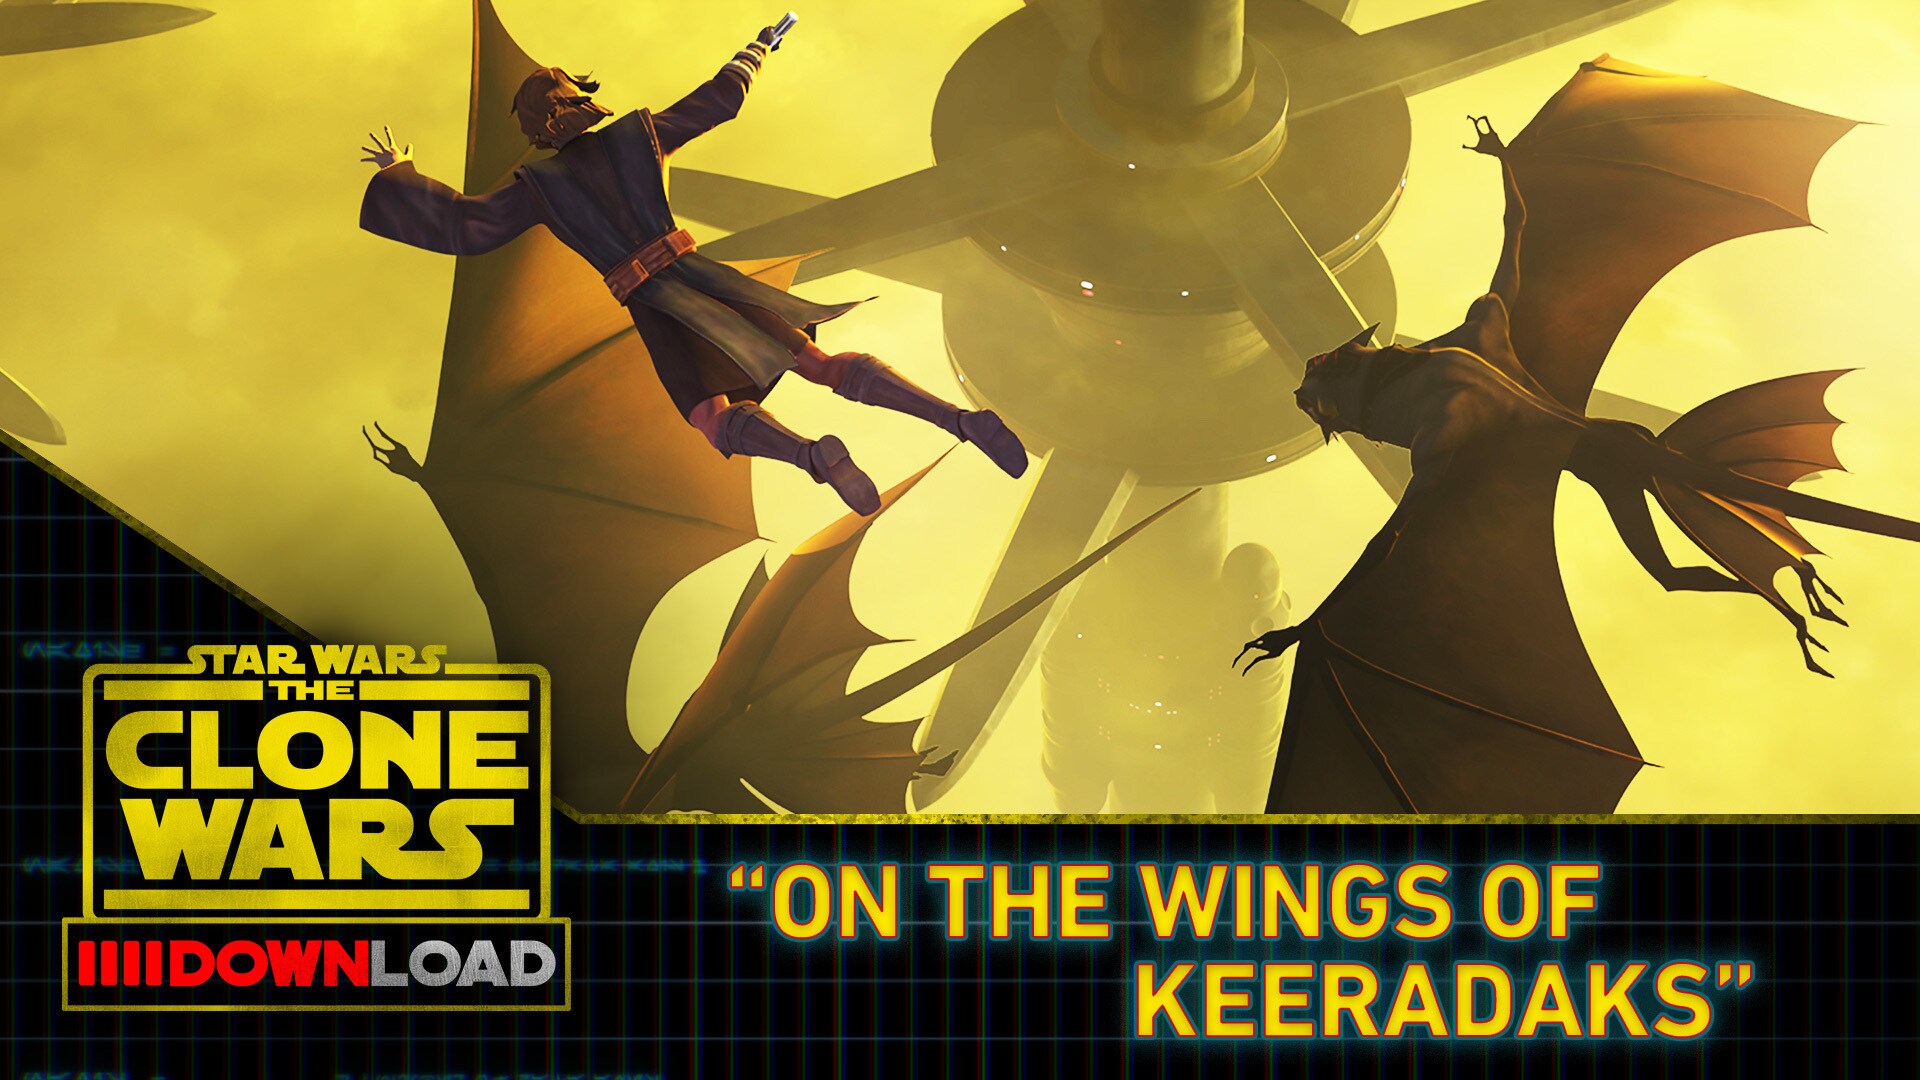 Clone Wars Download: On the Wings of Keeradaks